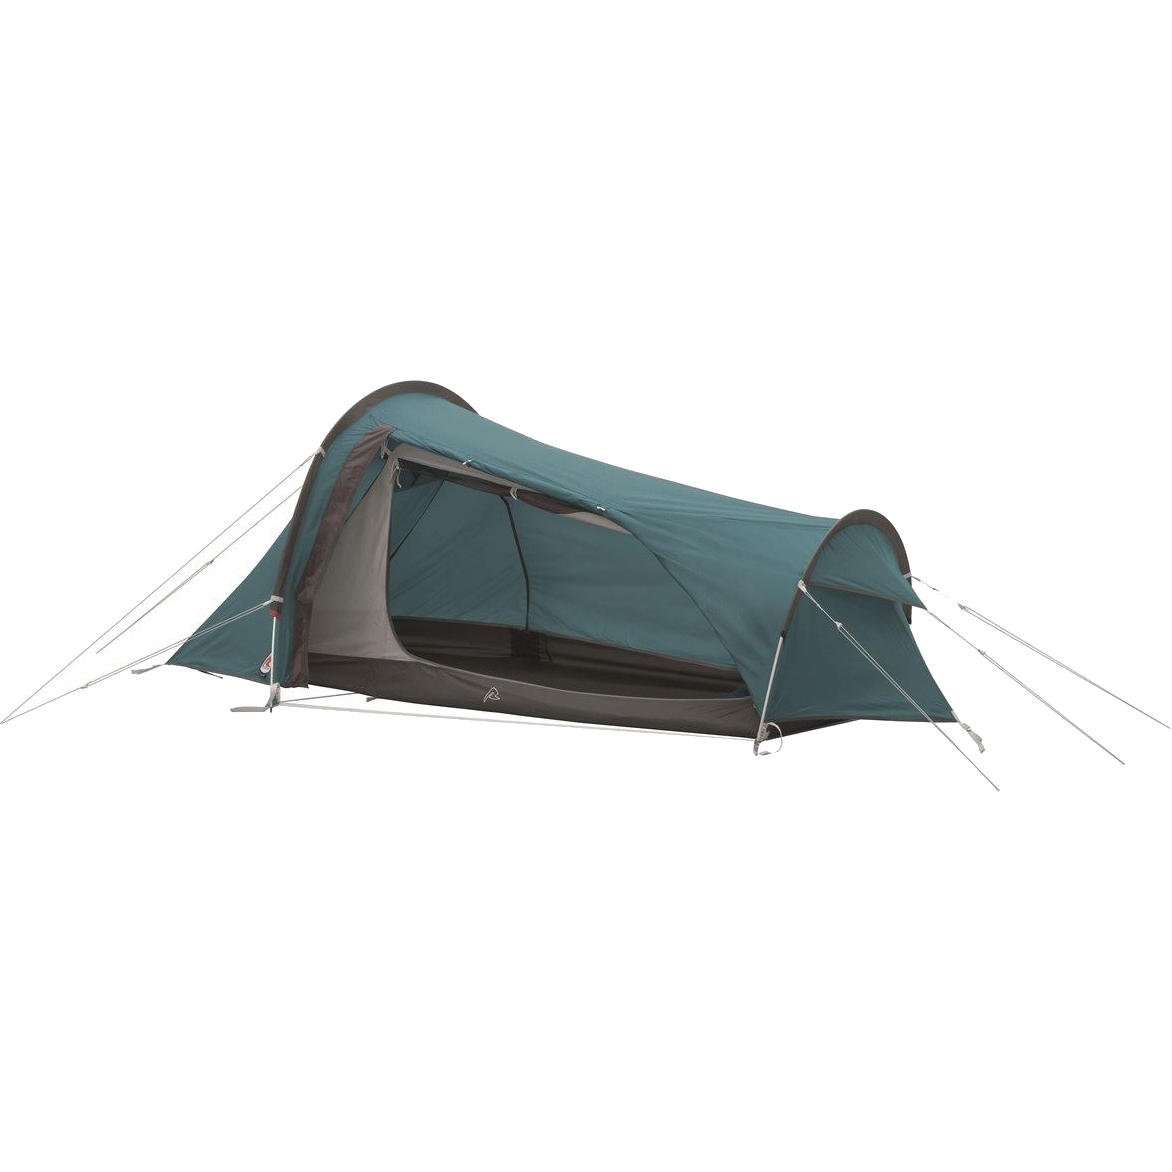 Productfoto van Robens Arrow Head 1 Tent - Blauw